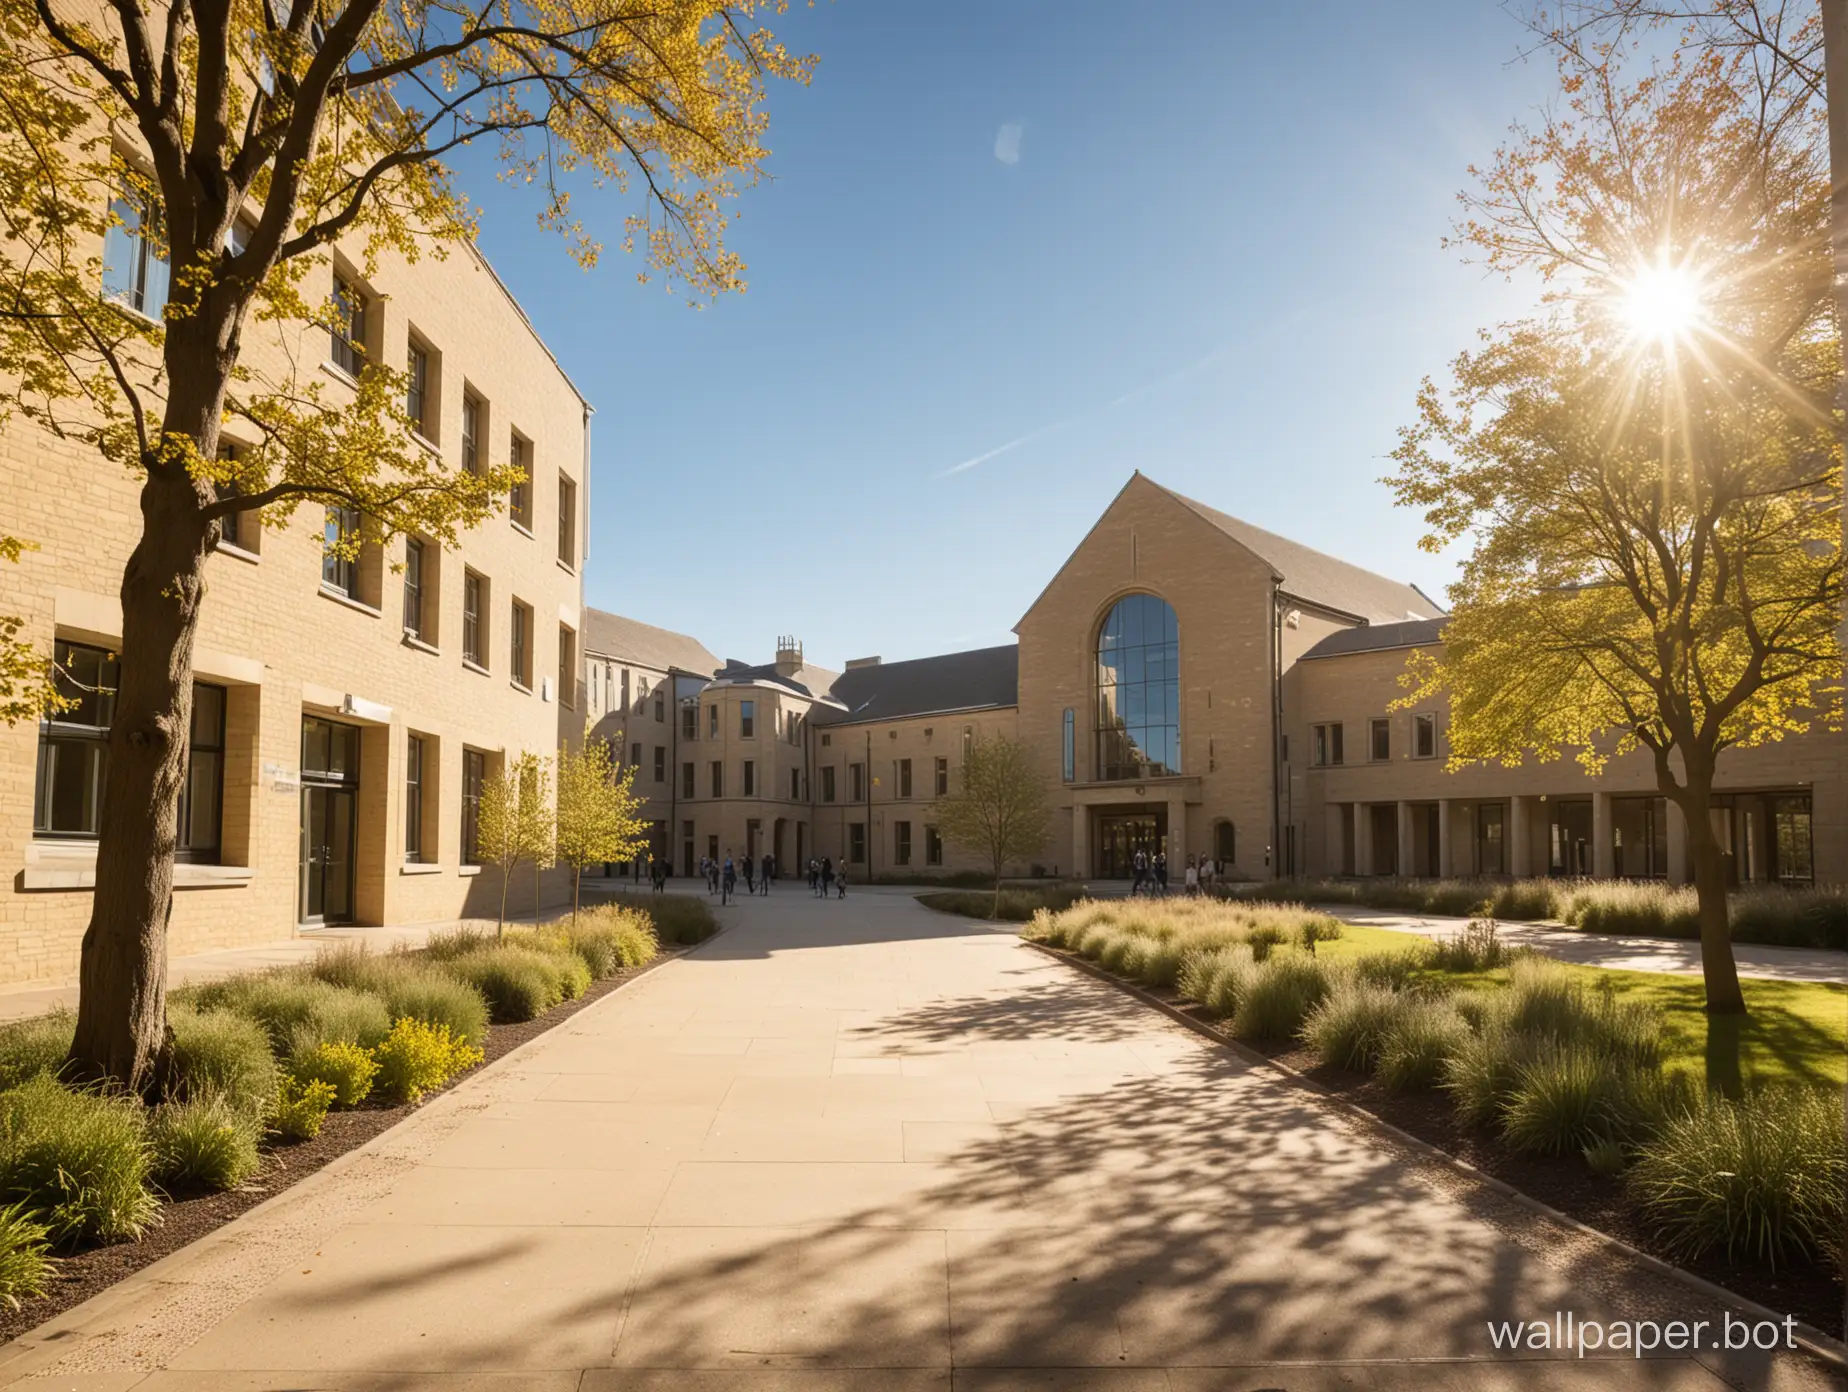 Bright-Sunshine-Illuminates-Campus-and-Teaching-Buildings